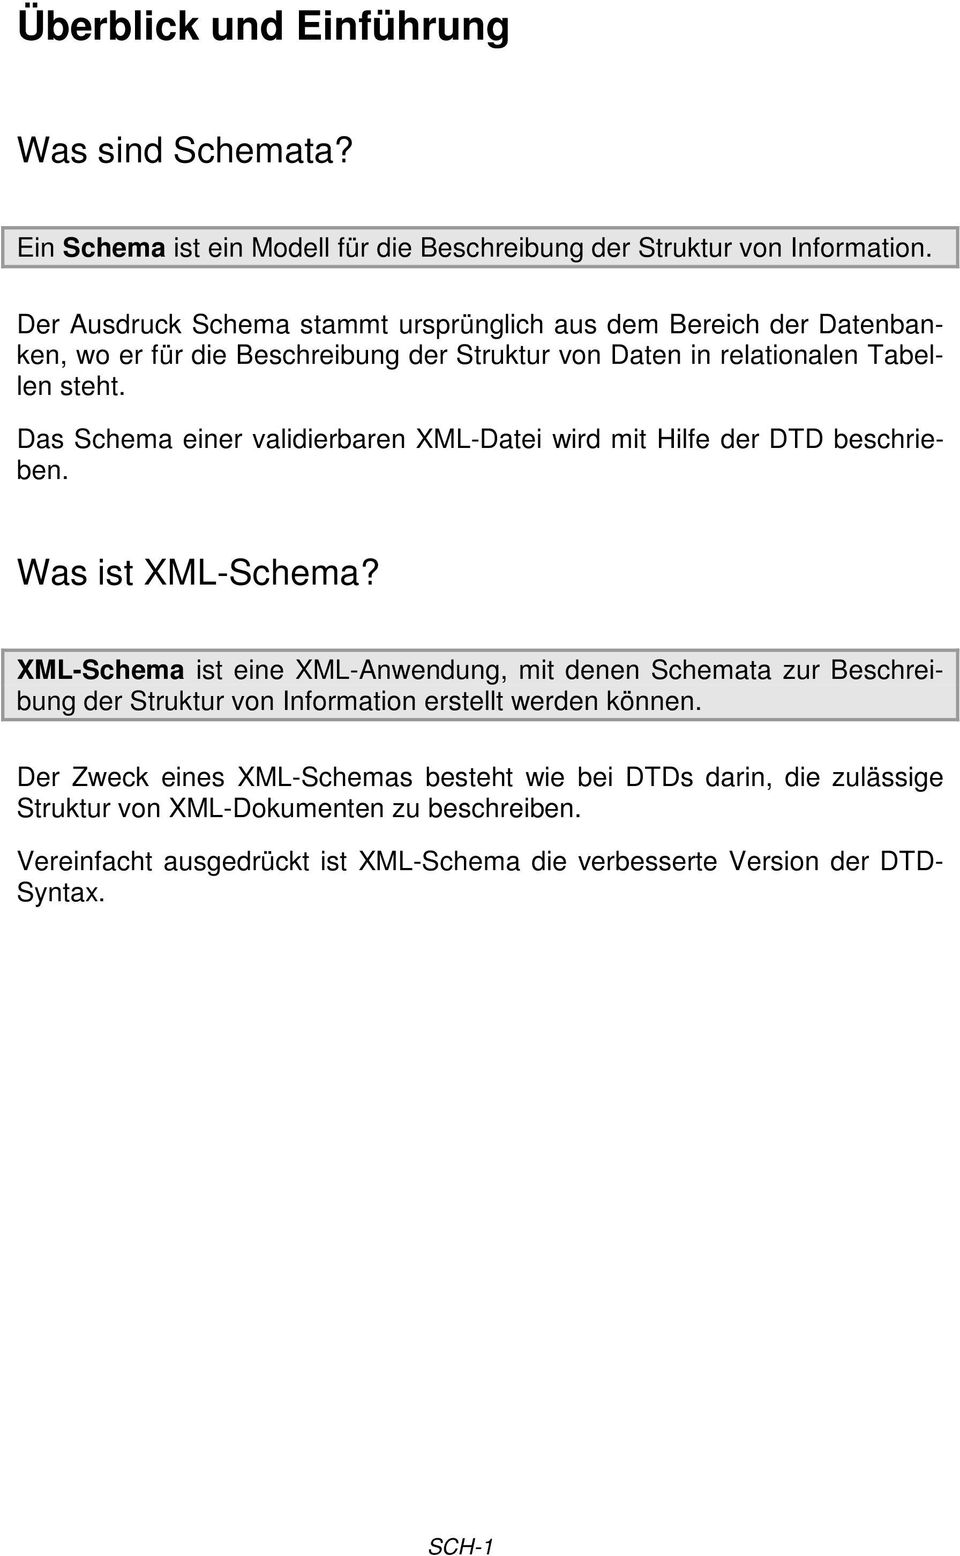 Das Schema einer validierbaren XML-Datei wird mit Hilfe der DTD beschrieben. Was ist XML-Schema?